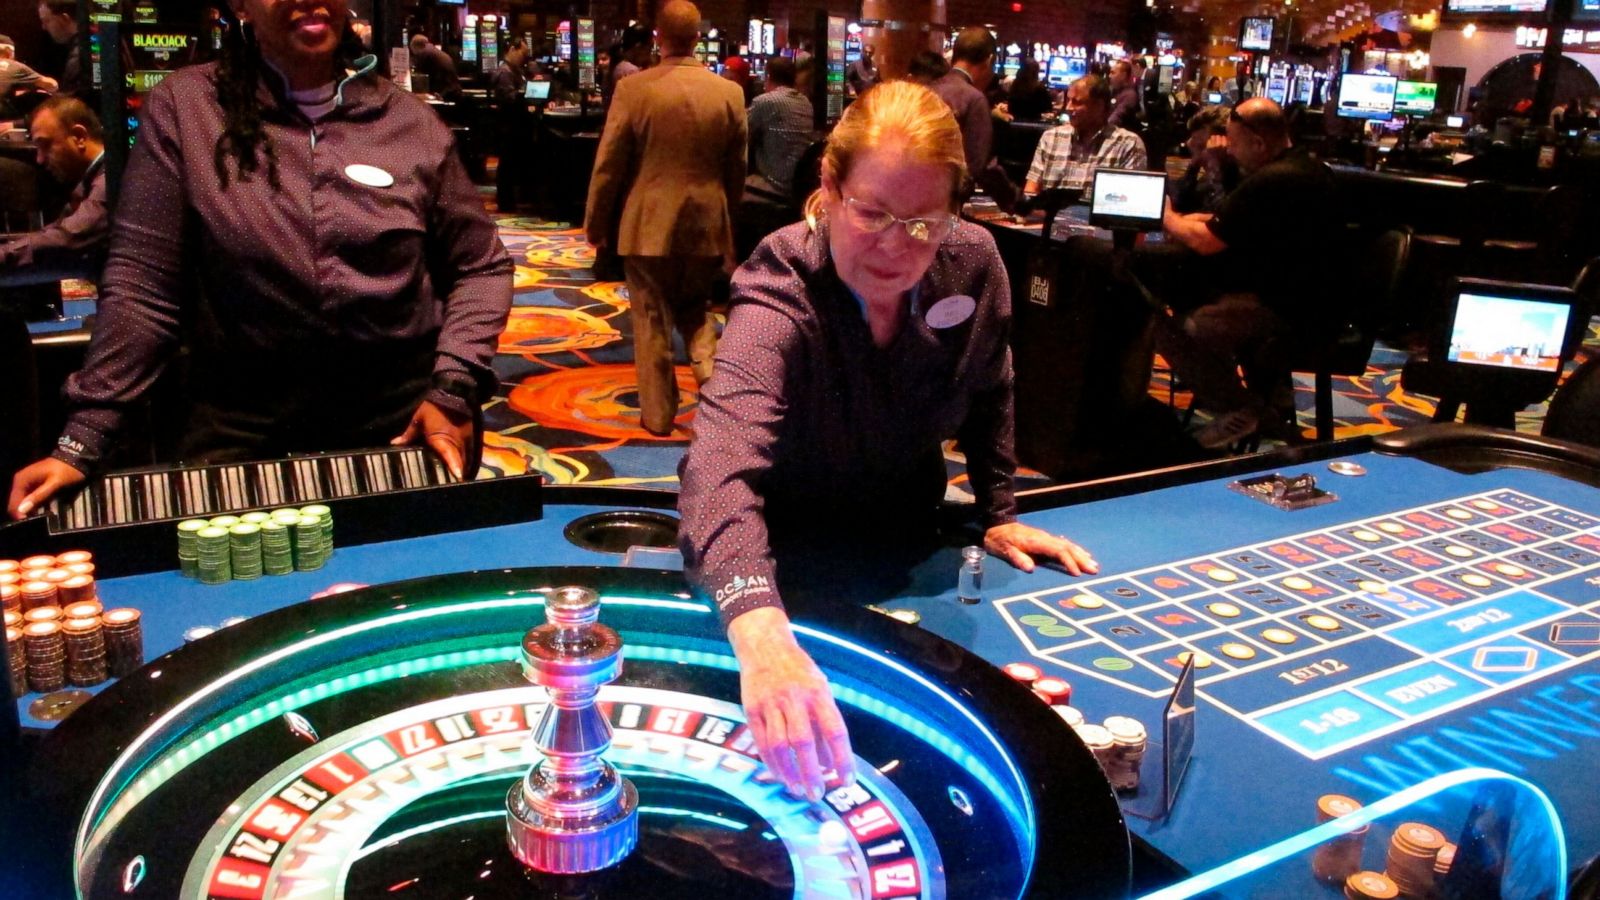 Borgata: Ocean Casino is poaching our execs, trade secrets - ABC News